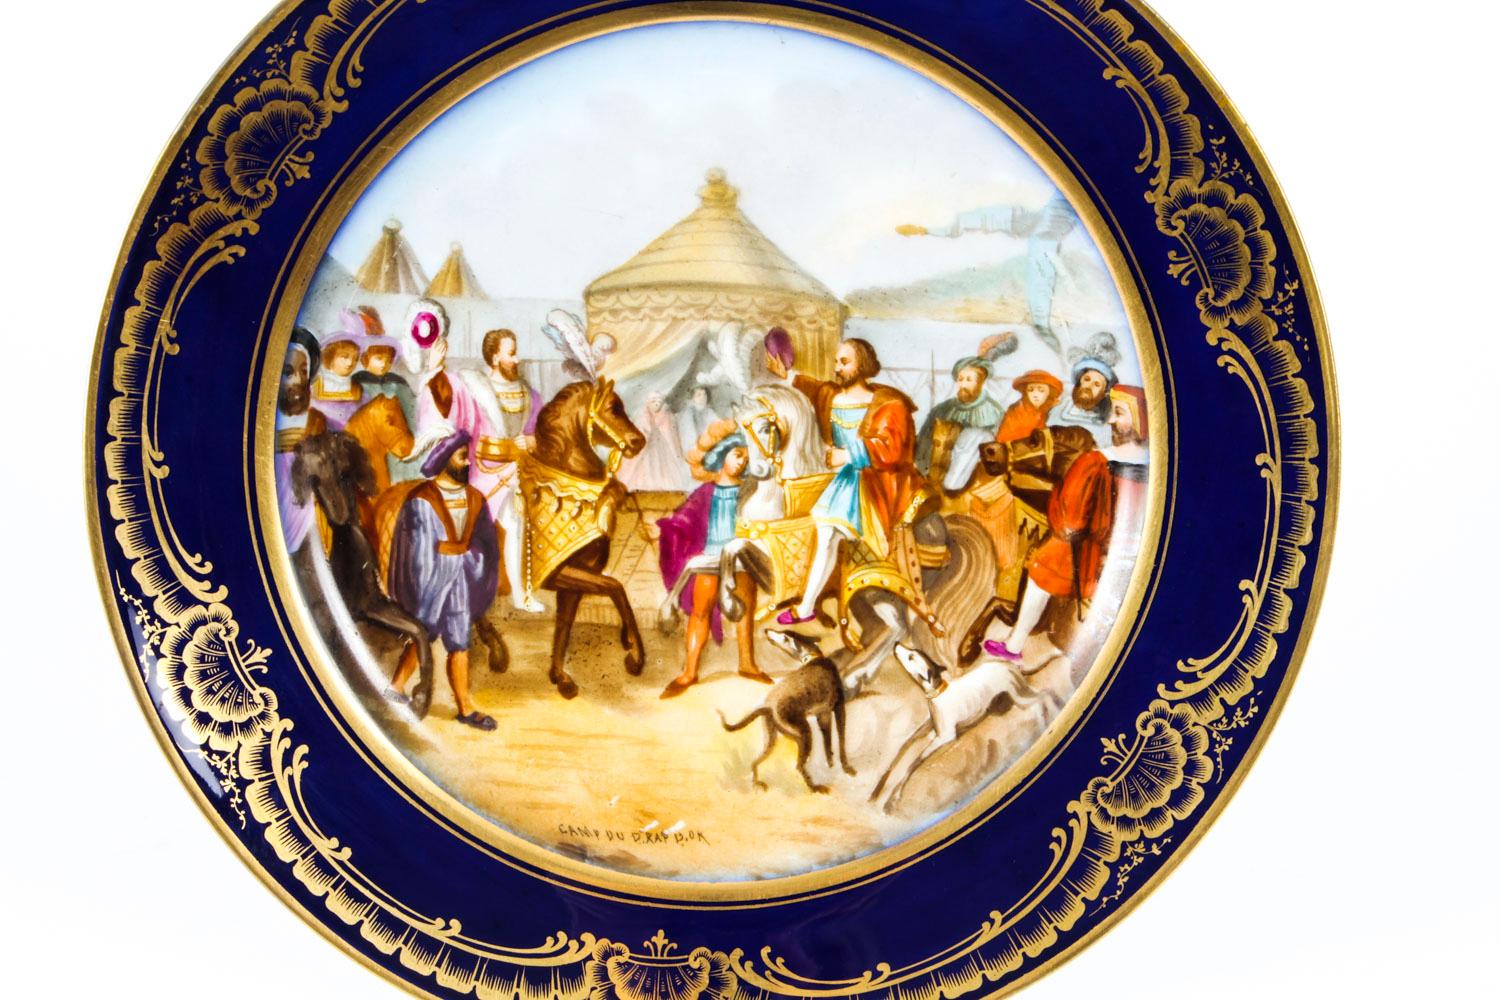 Il s'agit d'une belle assiette de cabinet en porcelaine de Sèvres, datant de 1880.
 
La plaque est superbement peinte à la main et présente un panneau central avec une scène de bataille du 15ème siècle dans des bordures bleu roi avec des volutes